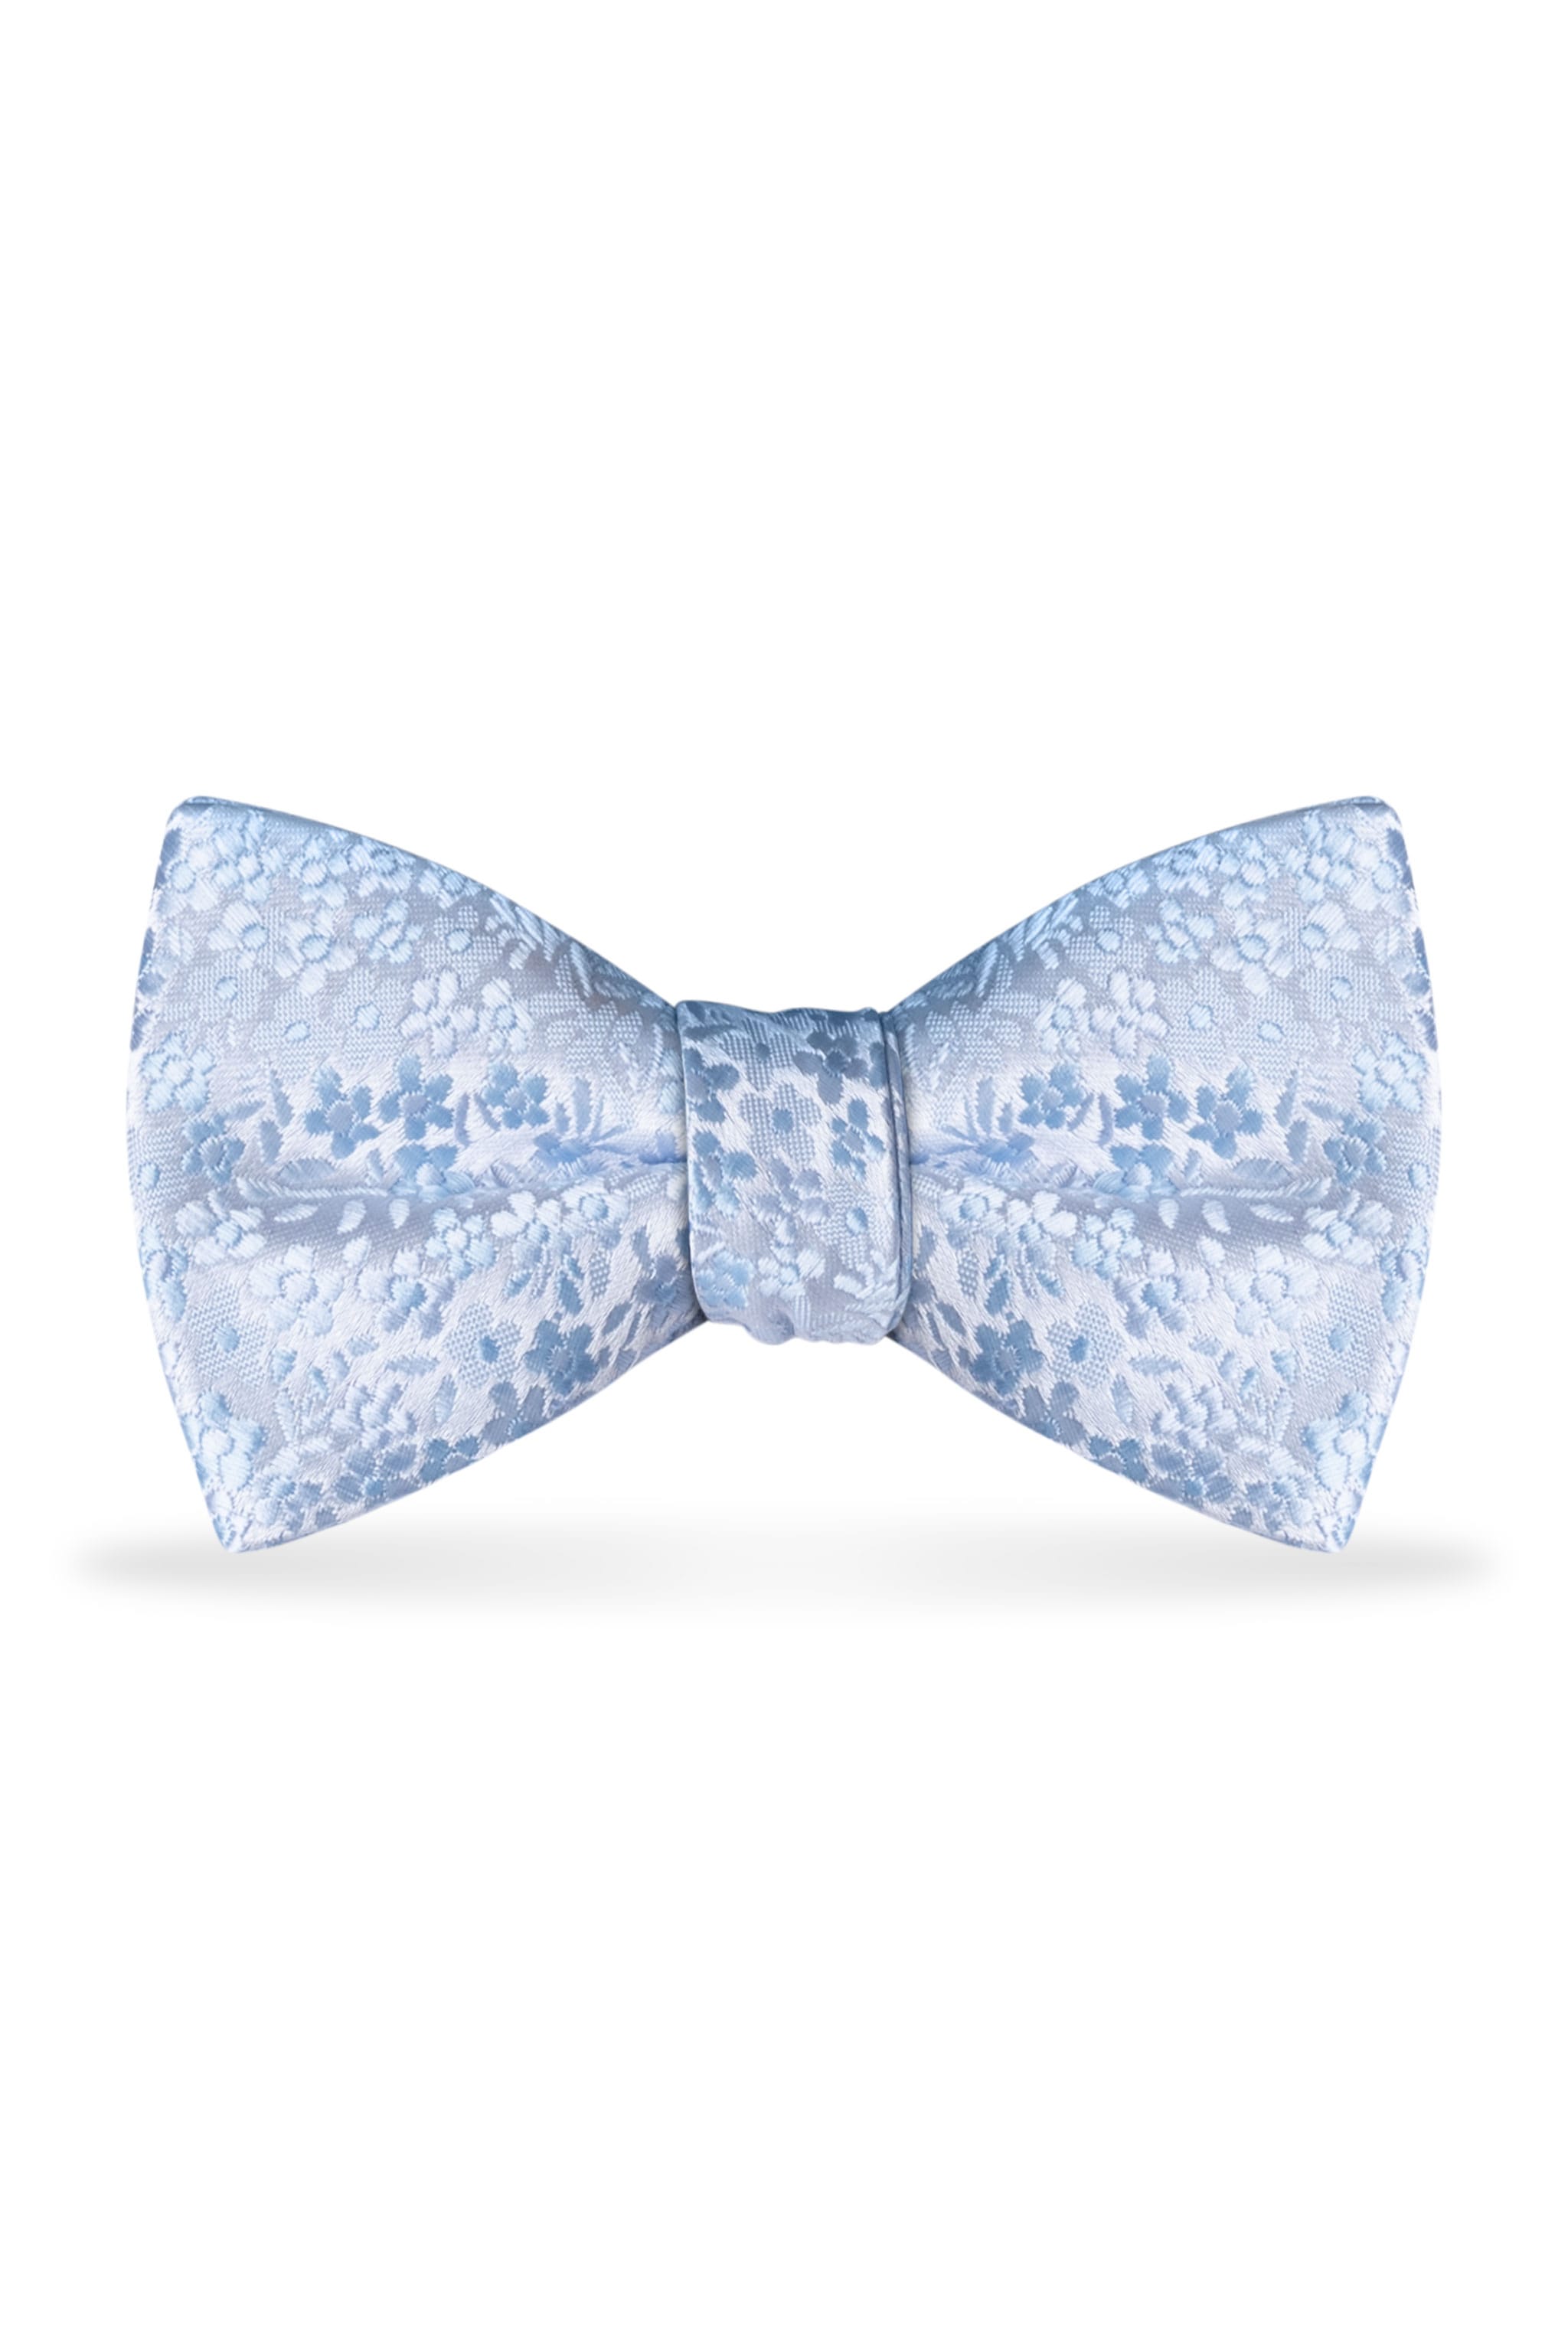 Floral Lite Blue Bow Tie